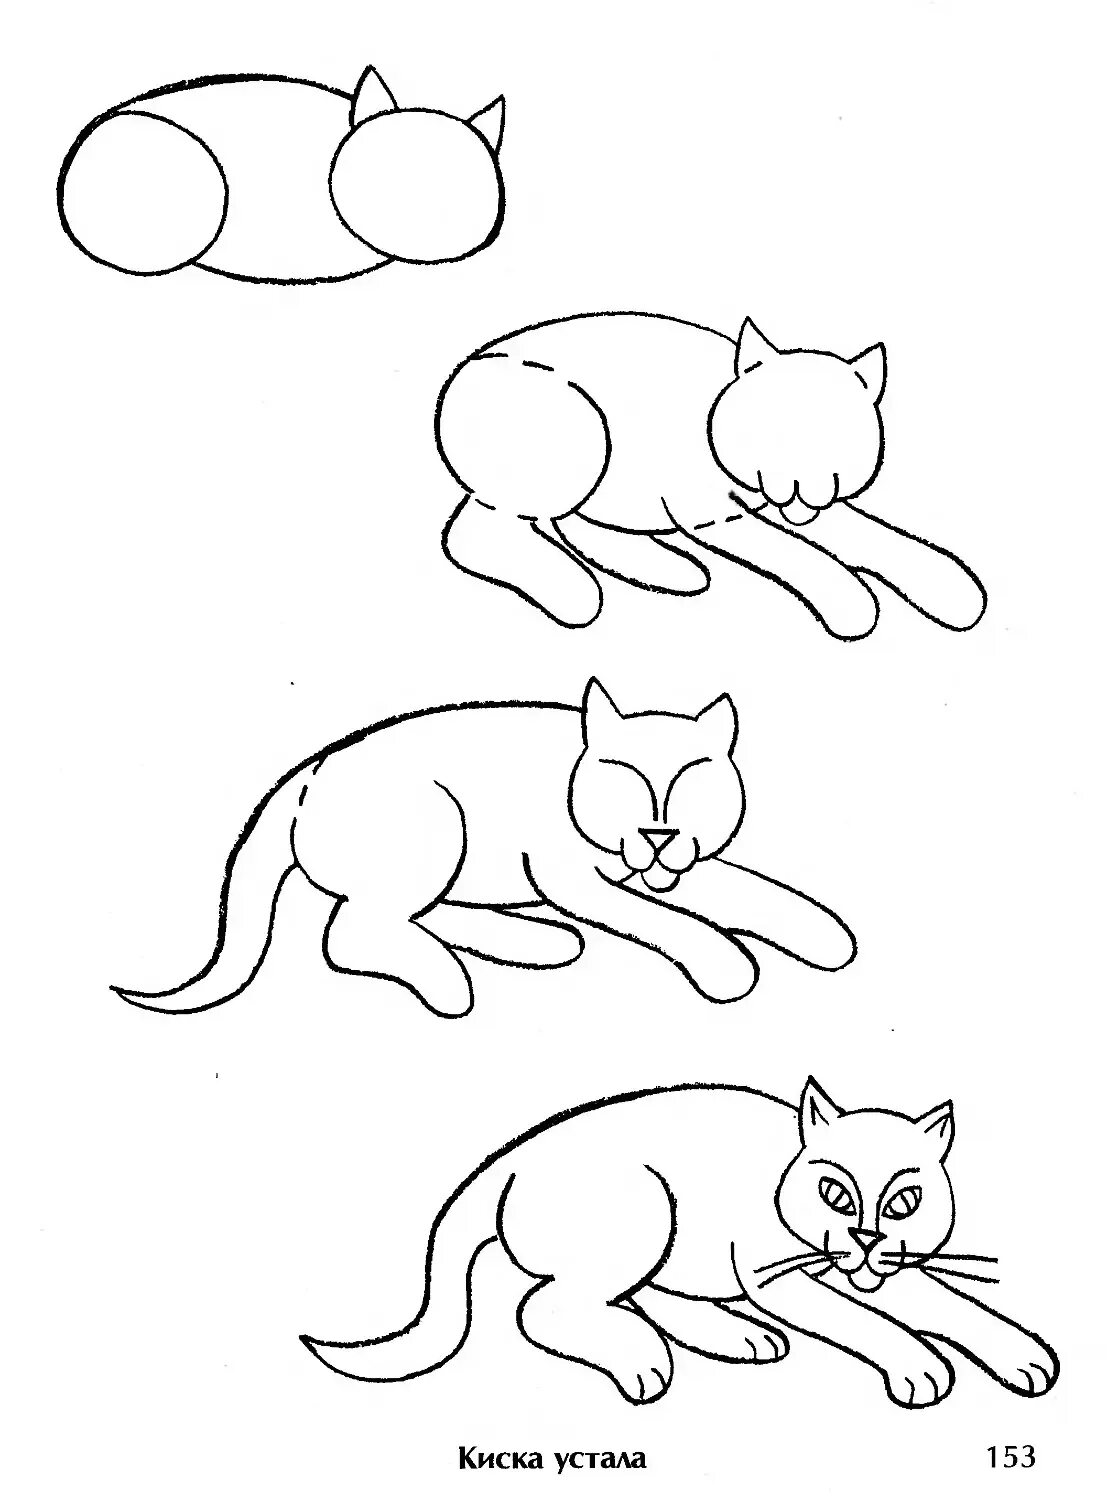 Схема рисования кошки для дошкольников. Поэтапное рисование кошки. Кошка для рисования для детей. Поэтапное рисование кошки карандашом.